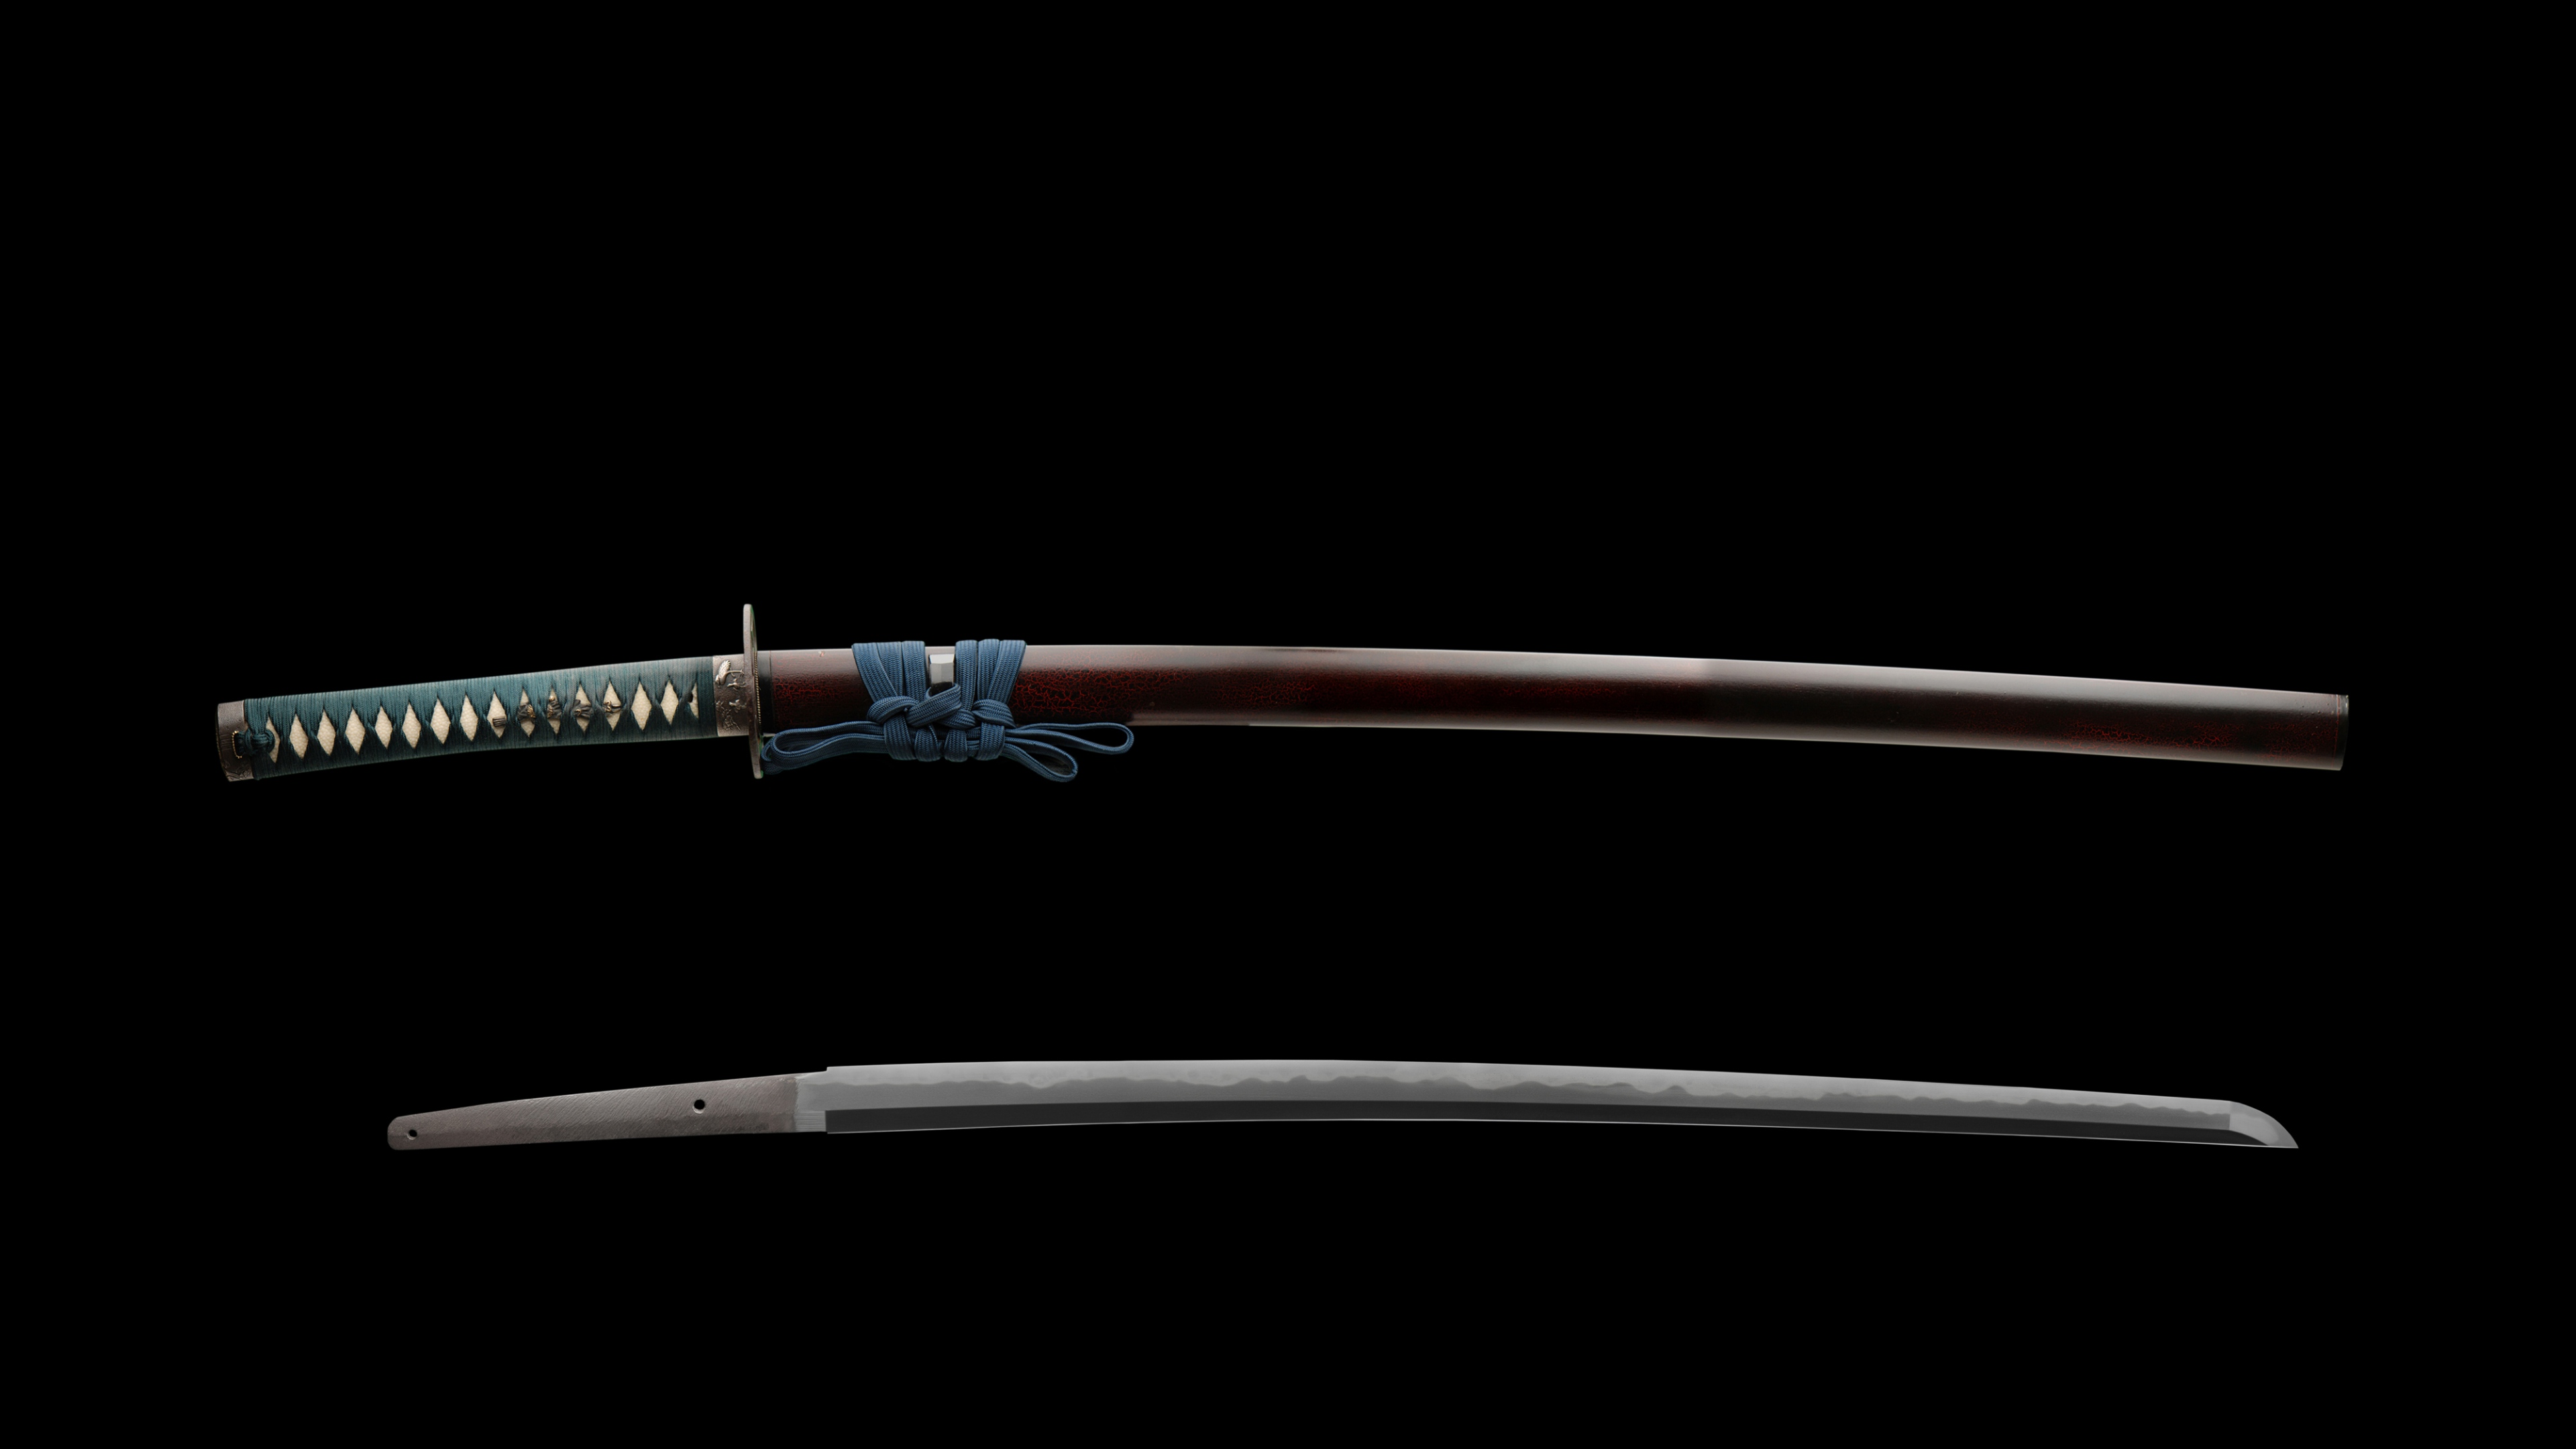 Katana Sword Blade 3840x2160